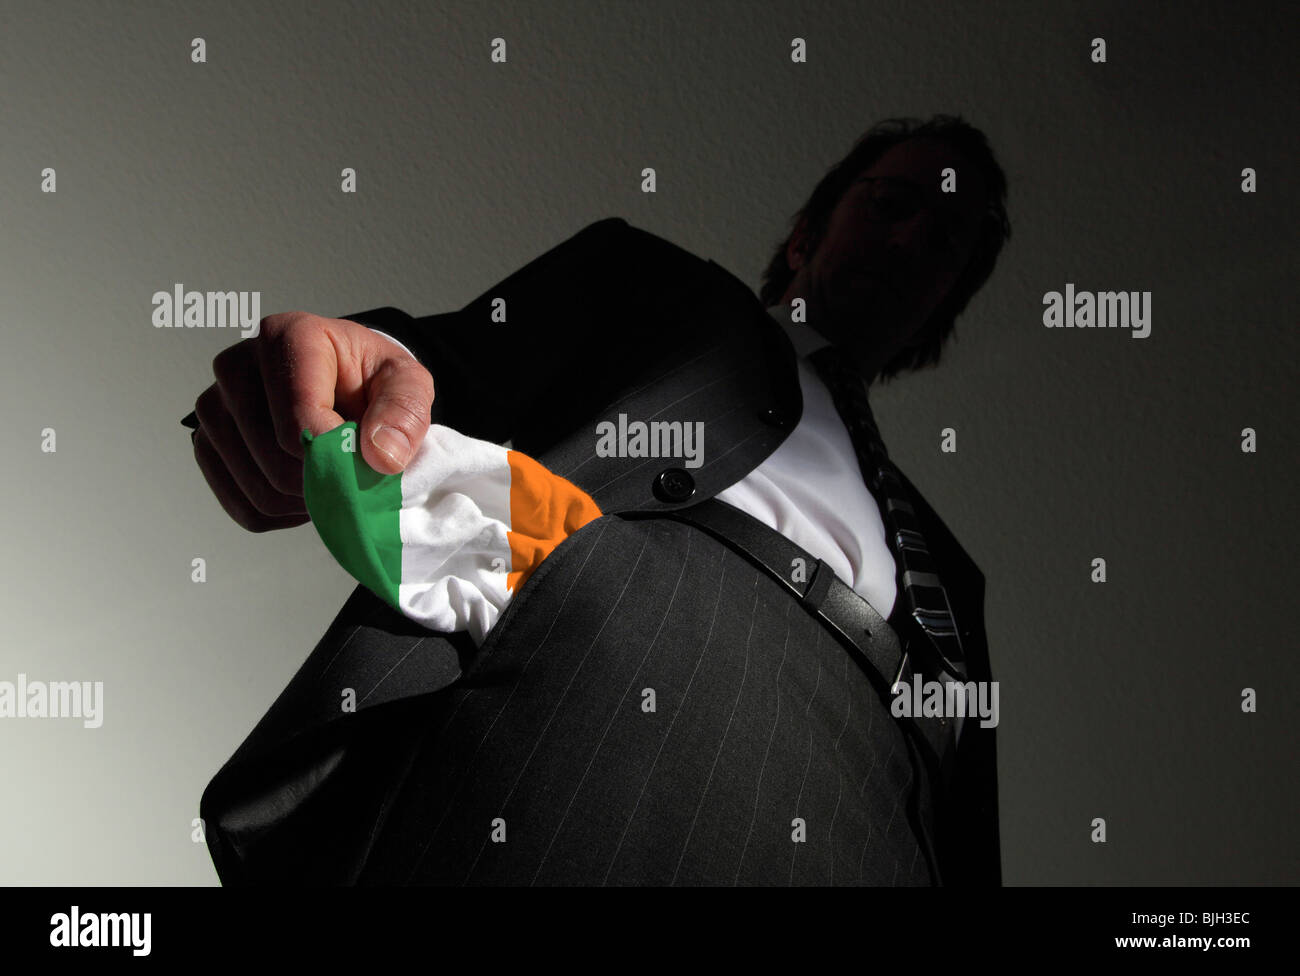 Homme en costume avec poches vides dans les couleurs nationales de l'Irlande. Symbole : L'Irlande est en faillite Banque D'Images